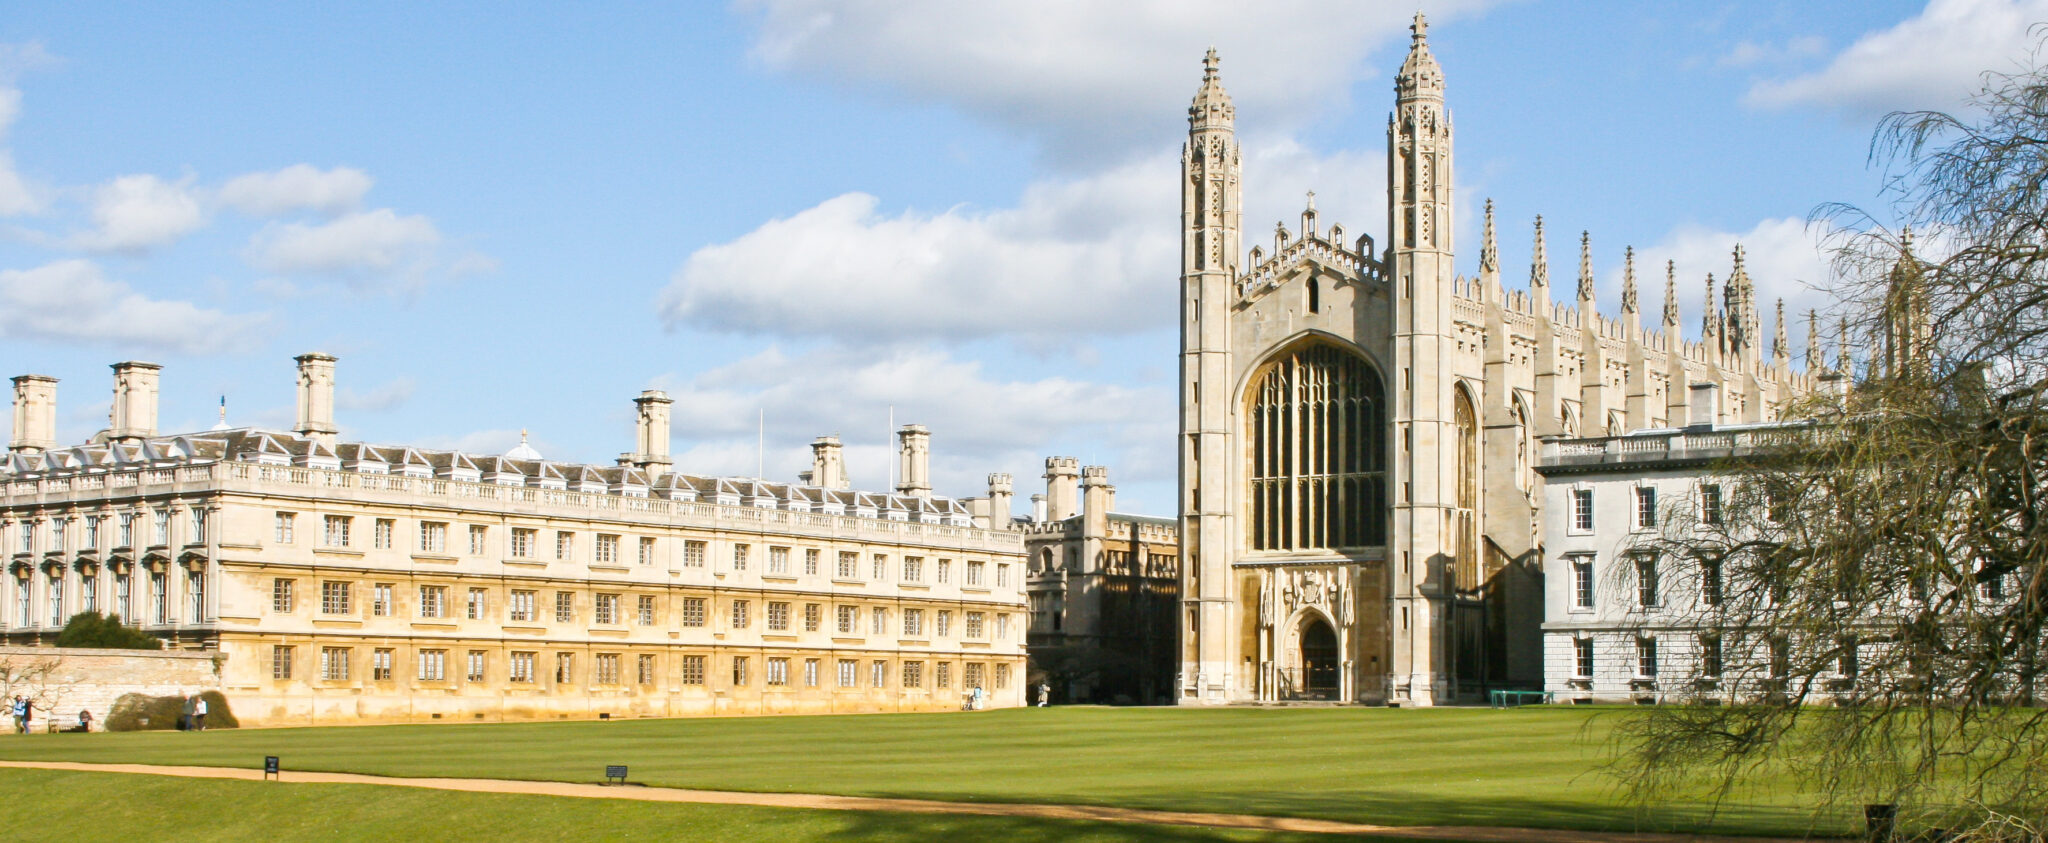 University of Cambridge Offers